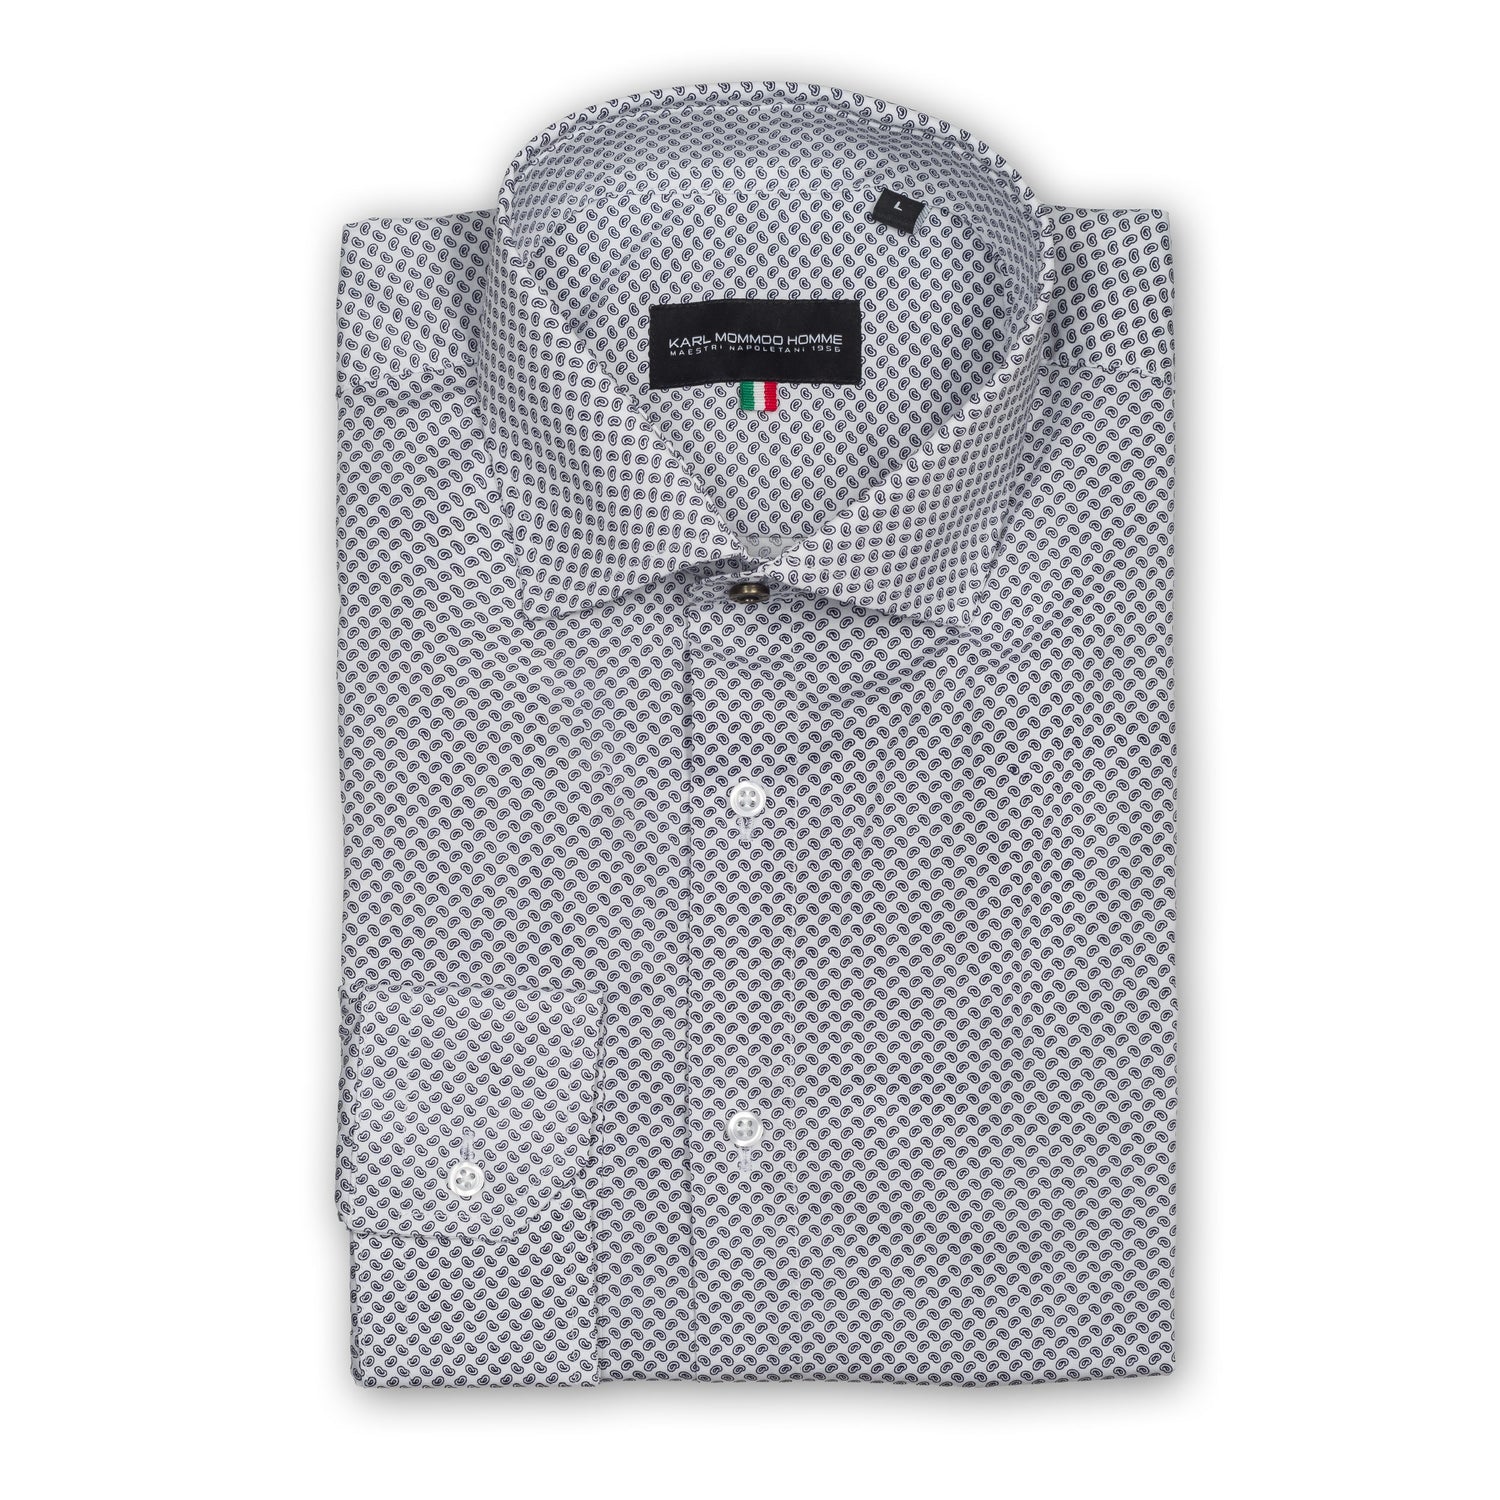 Karl Mommoo - Italienisches Herren-Hemd, weiß mit dunkelgrauem Paisley-Muster, Baumwolle mit Elasthan, Modern Fit. 